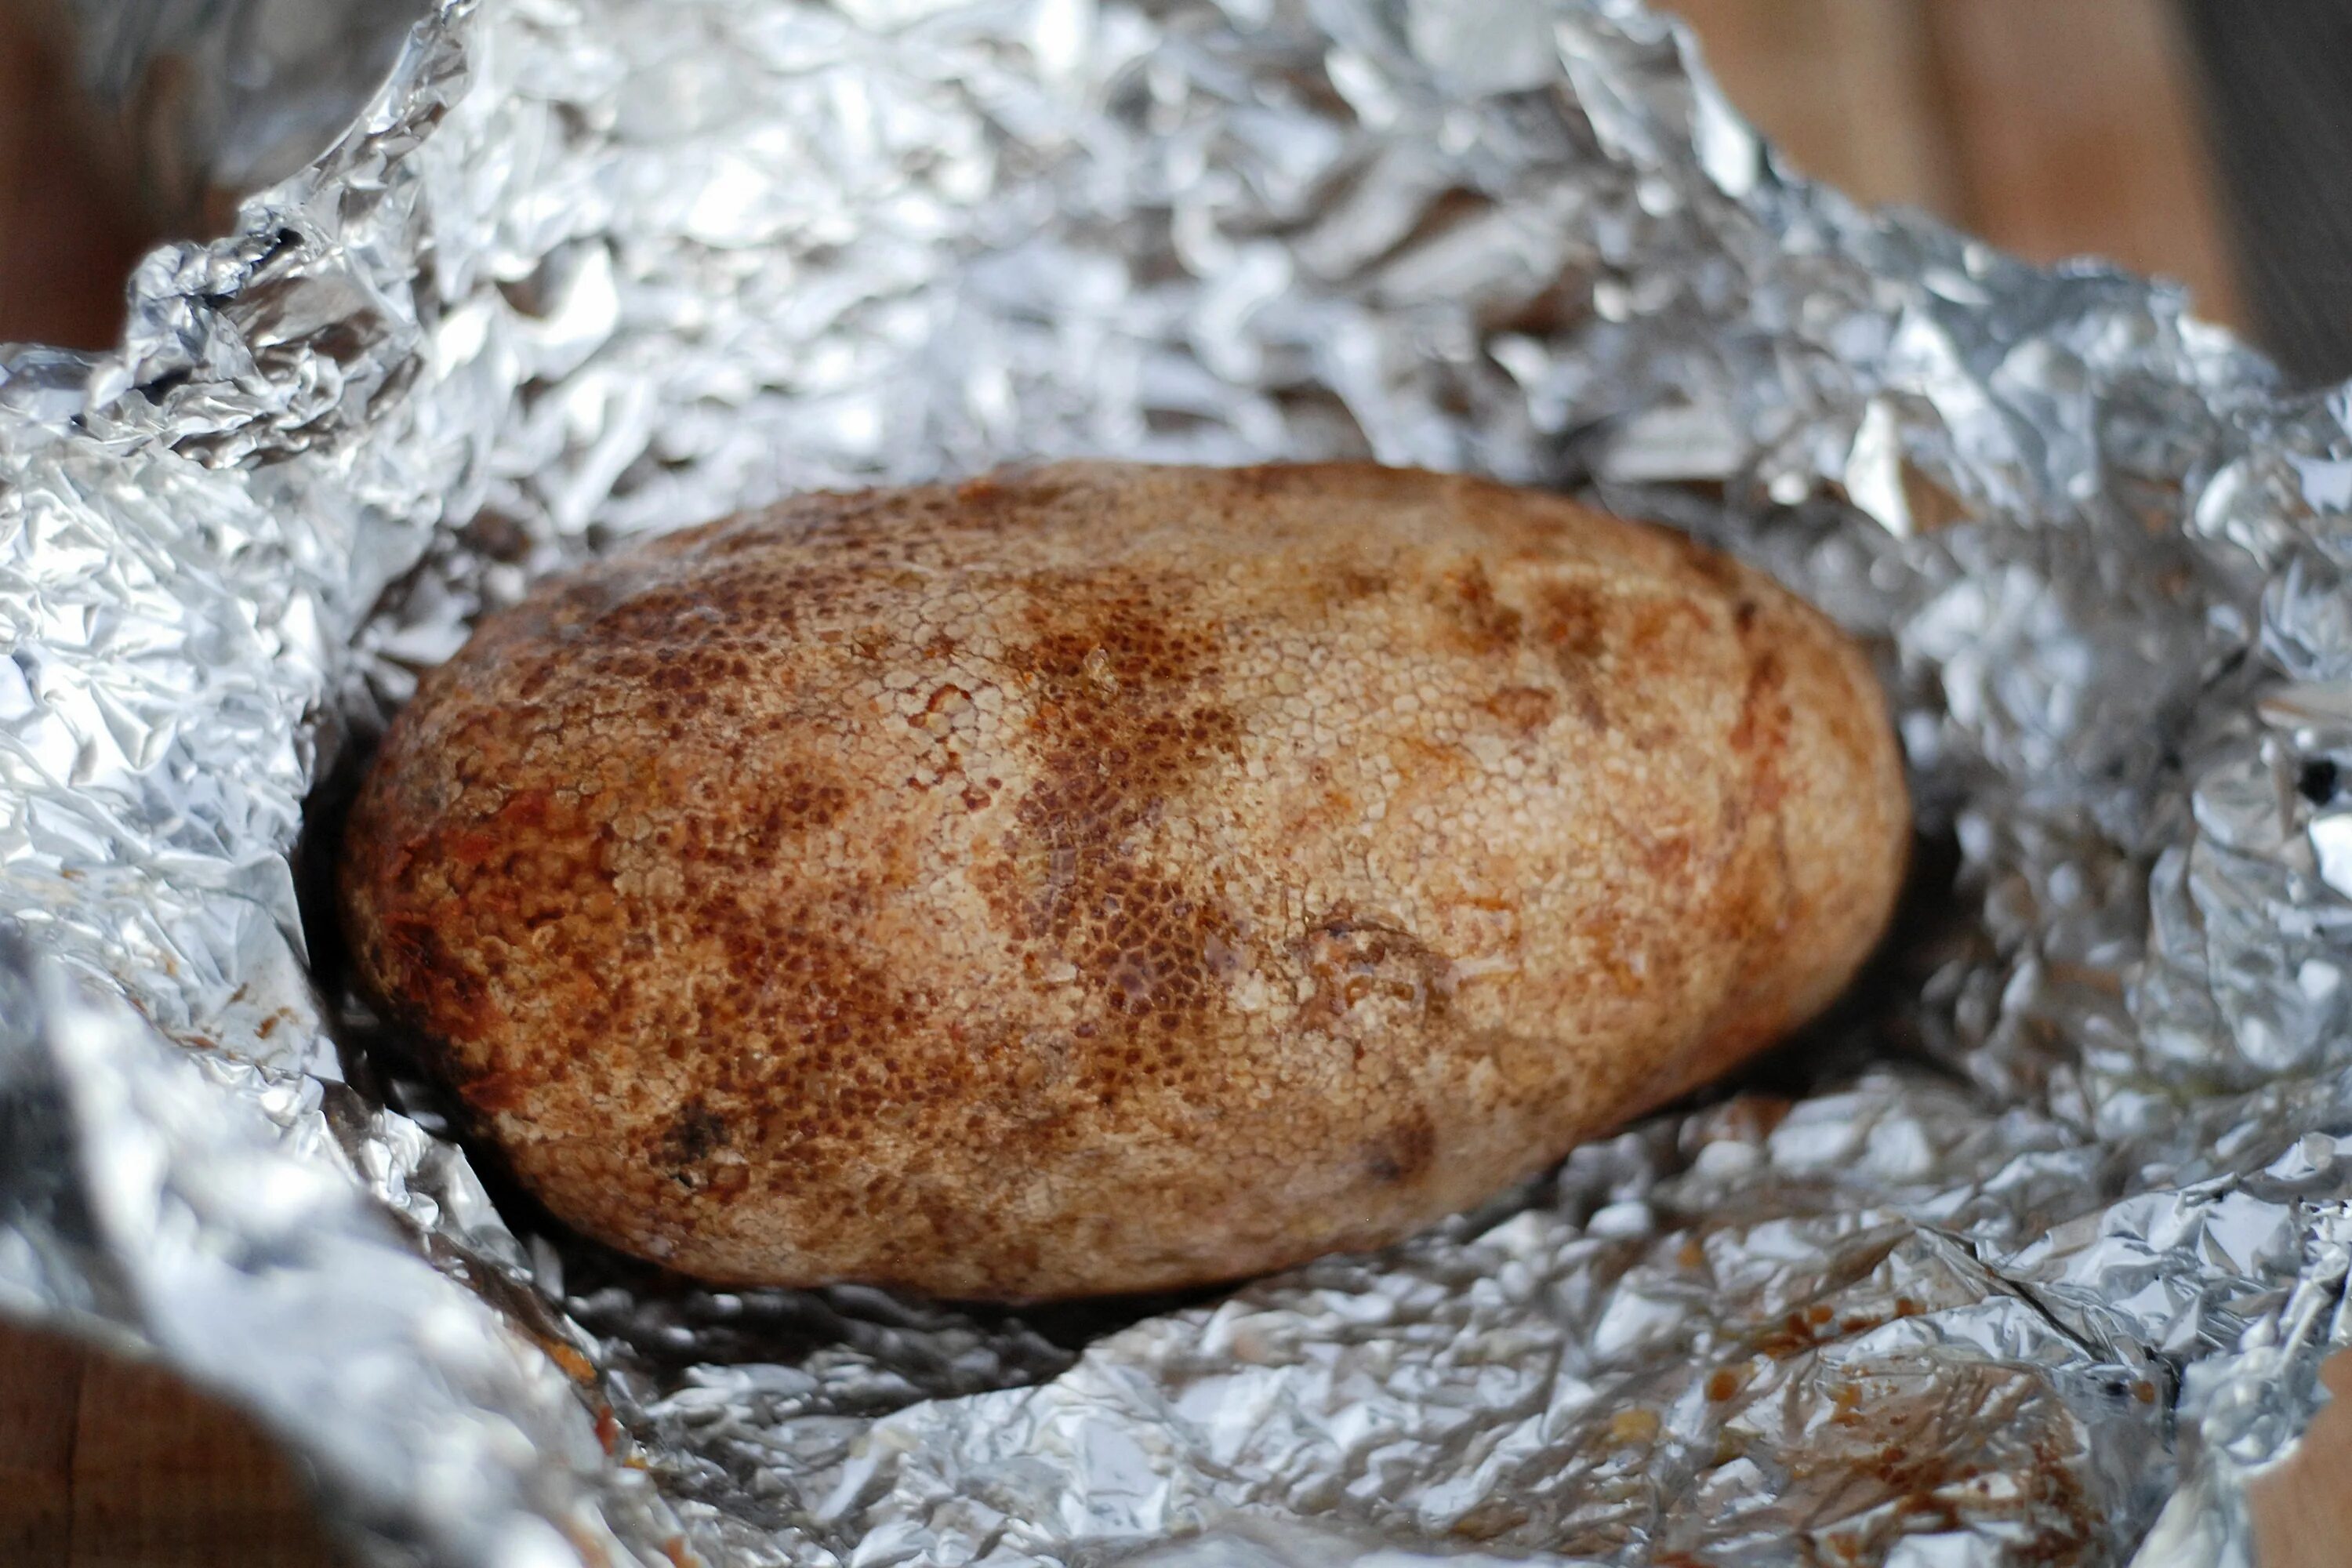 Картошка в фольге на углях. Печеная картошка в фольге на углях. Печеный картофель в фольге на углях. Картошка запеченная в фольге на углях.